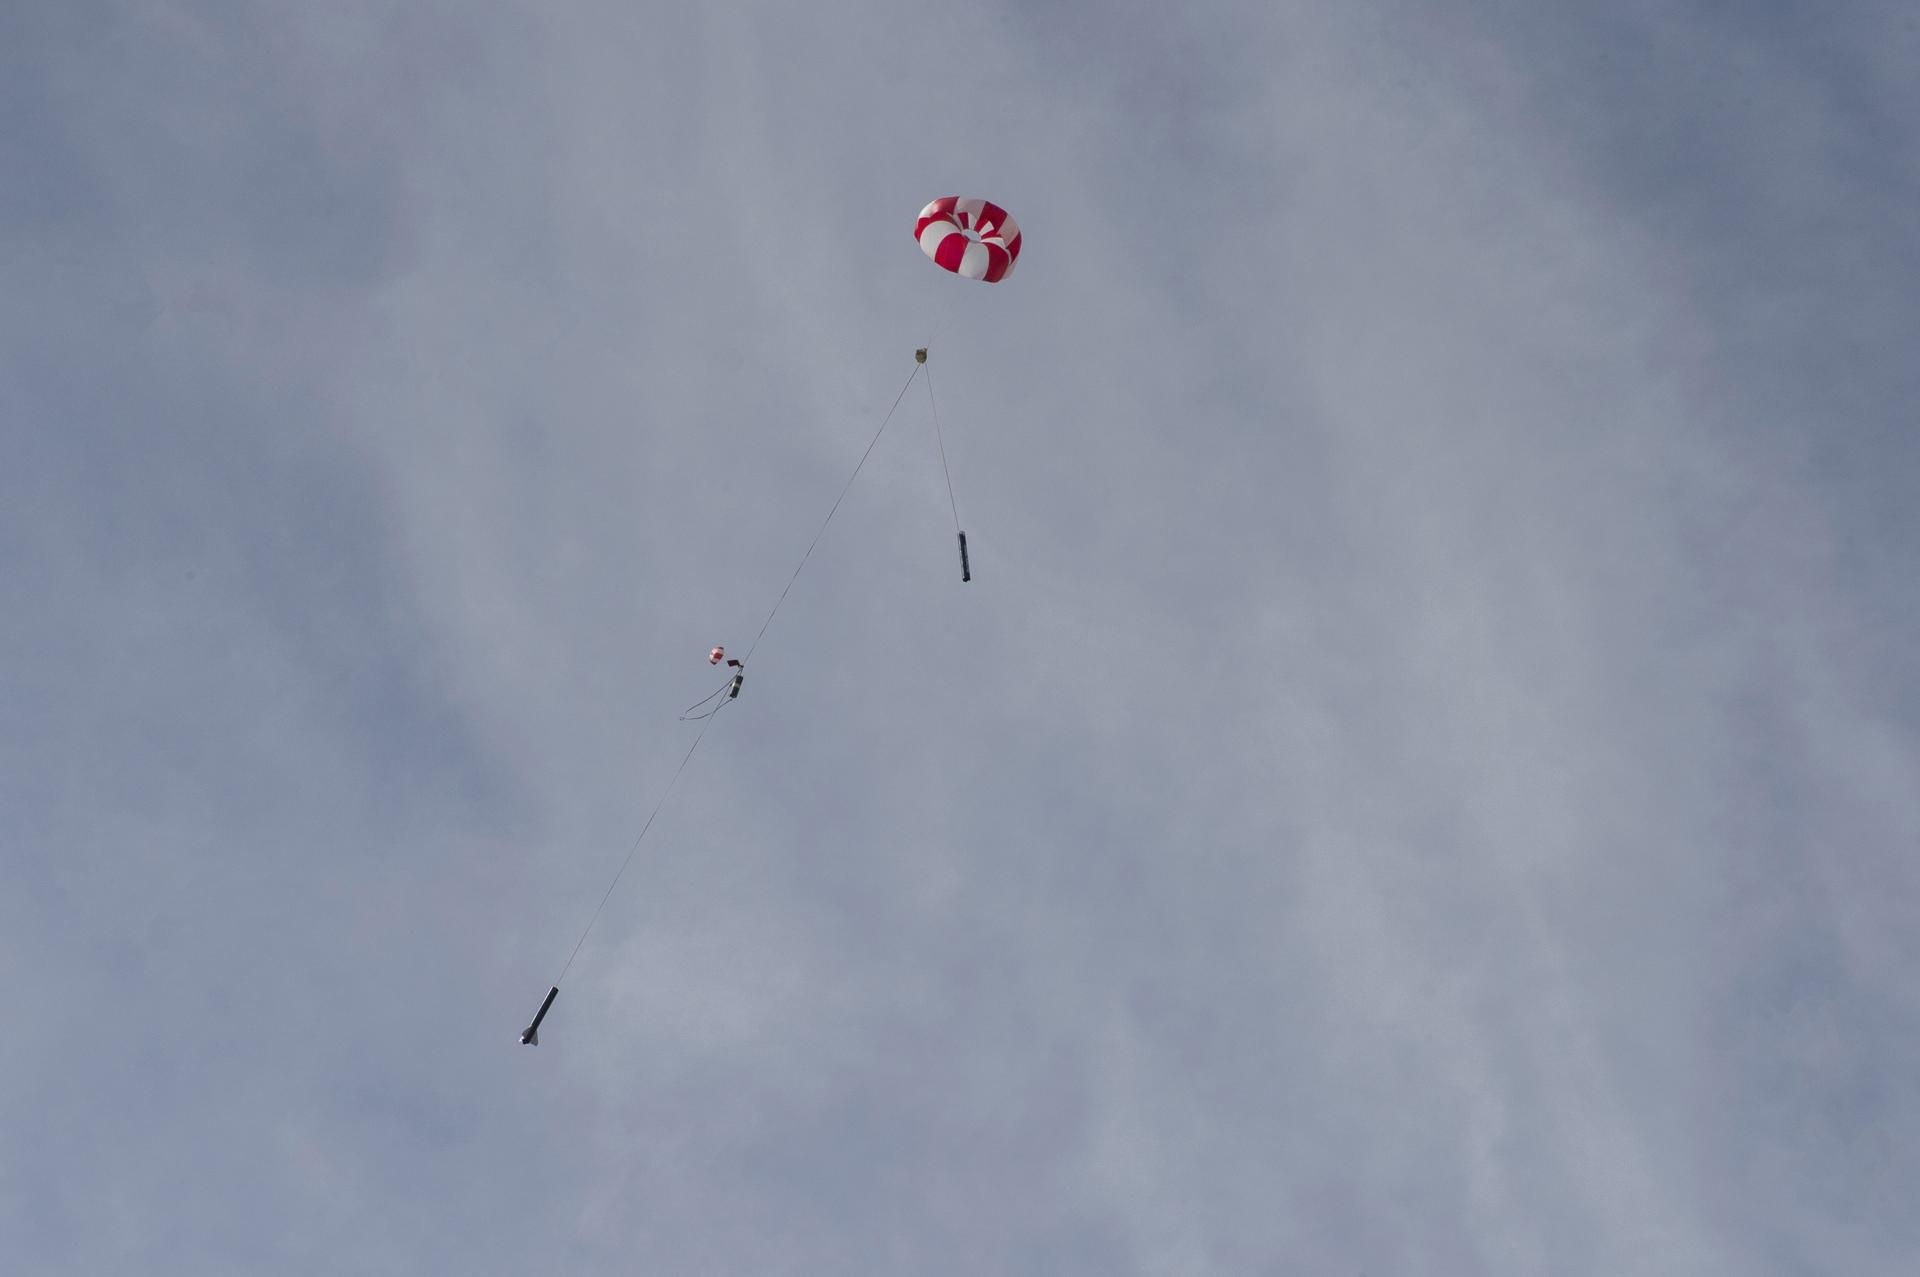 A rocket descends on its parachutes